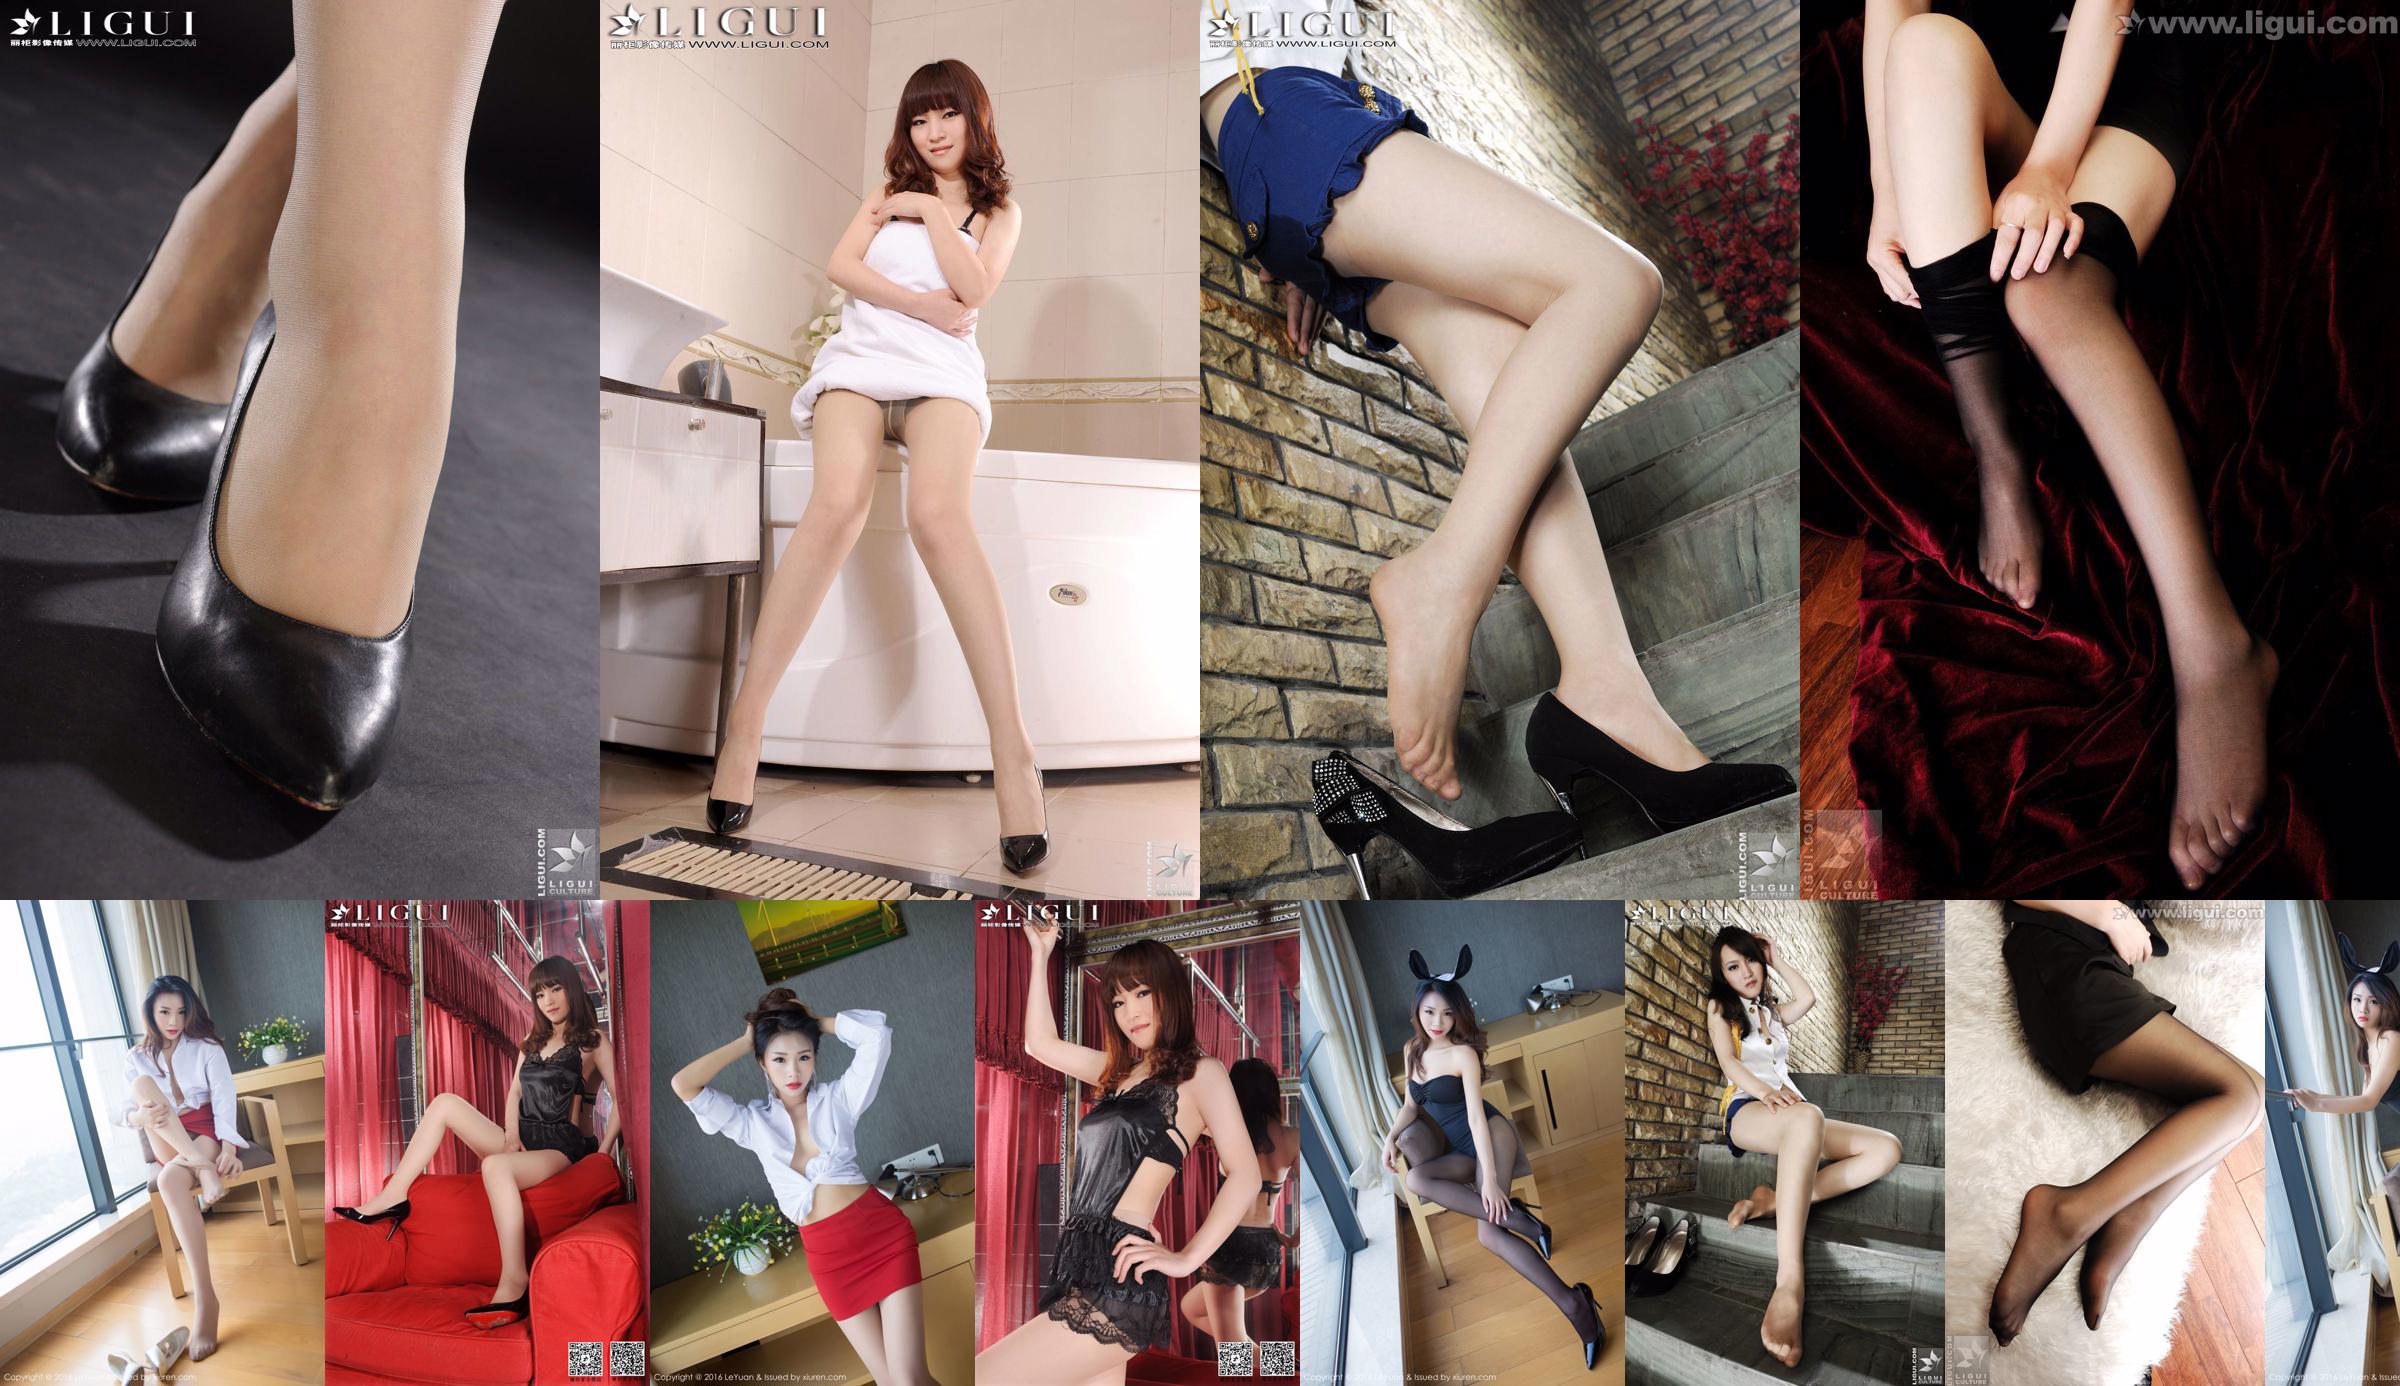 Modella Tina "La bellezza seducente di una segretaria femminile" [丽 柜 LiGui] Foto di belle gambe e piedi No.f06ef9 Pagina 6